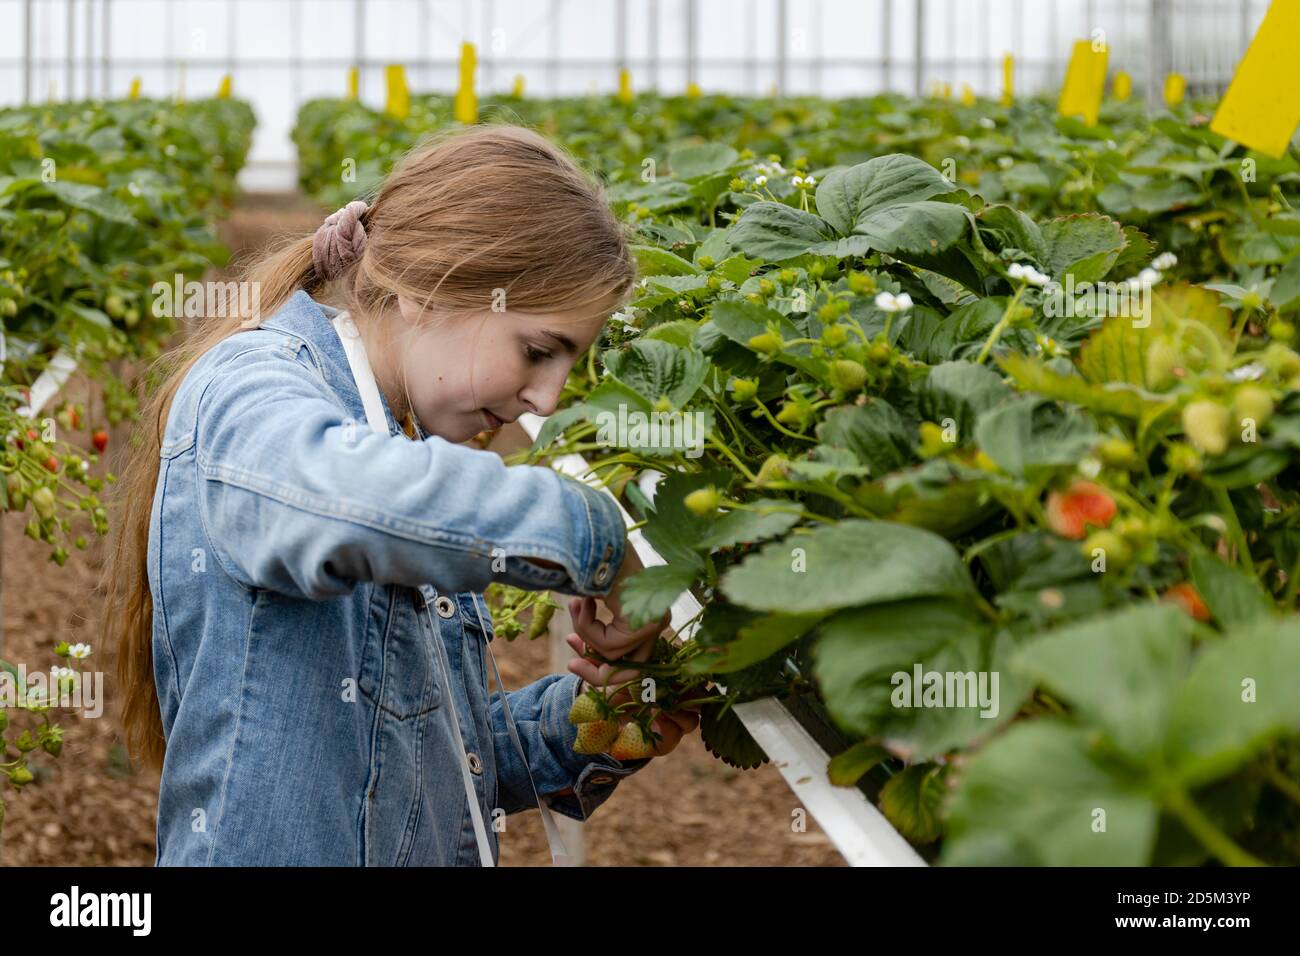 Jeune fille blonde cueillant des fraises avec des ciseaux dans une ferme de fraises en serre. Les cheveux des filles sont dans une queue de cheval et elle fait un denim Banque D'Images